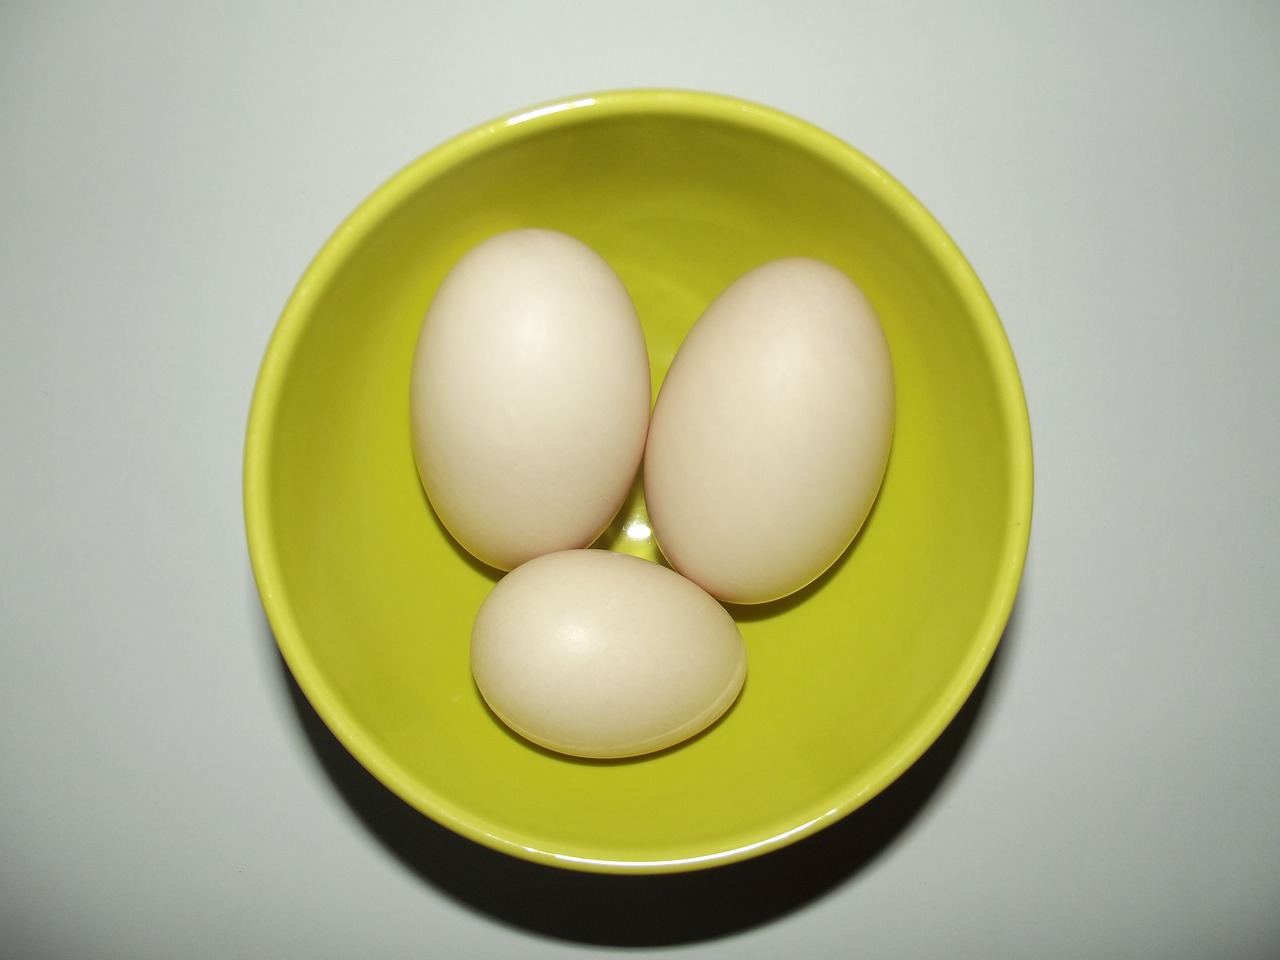 1 quả trứng vịt bao nhiêu calo? Mỗi quả trứng vịt luộc thường chứa khoảng 70-90 calo.